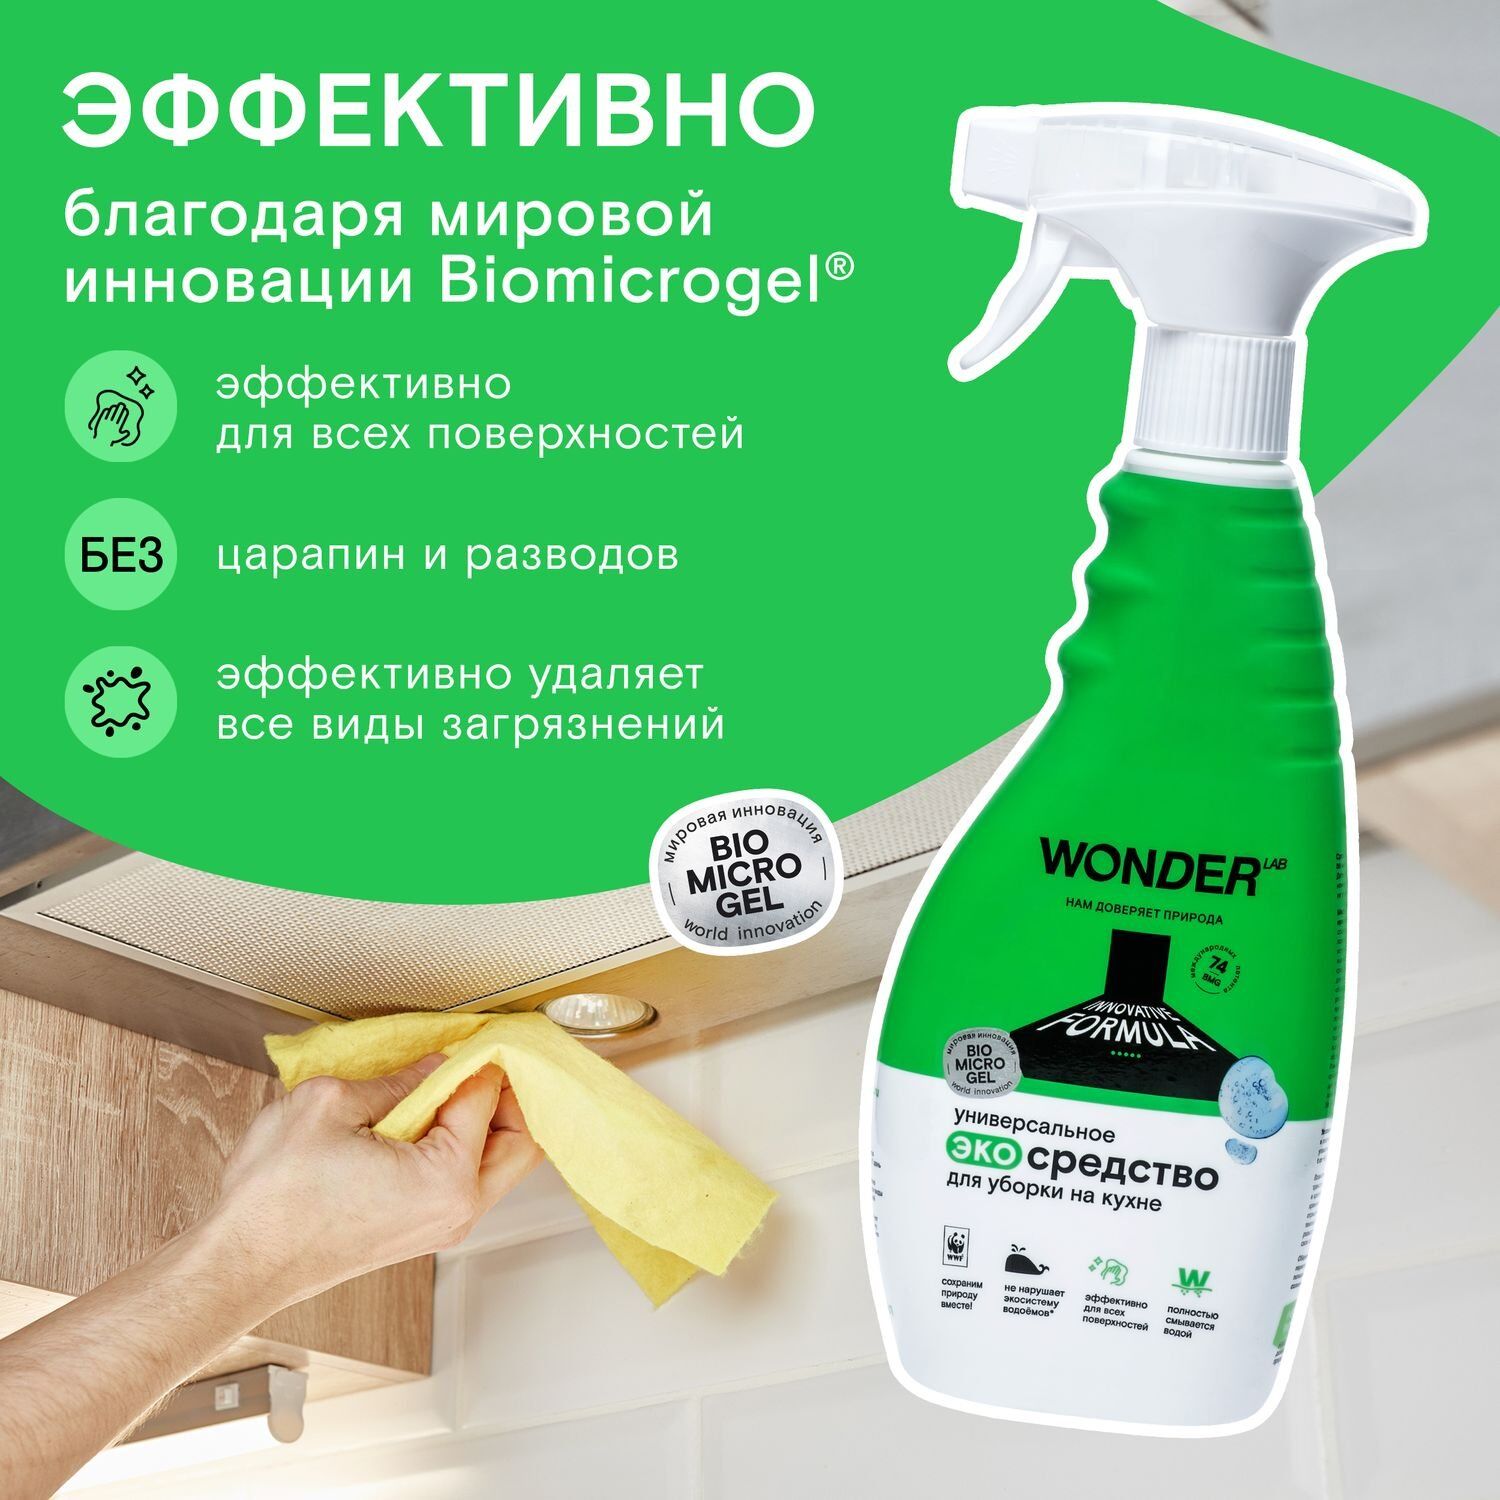 Чистящее средство для уборки на кухне, 0,55л Wonder Lab